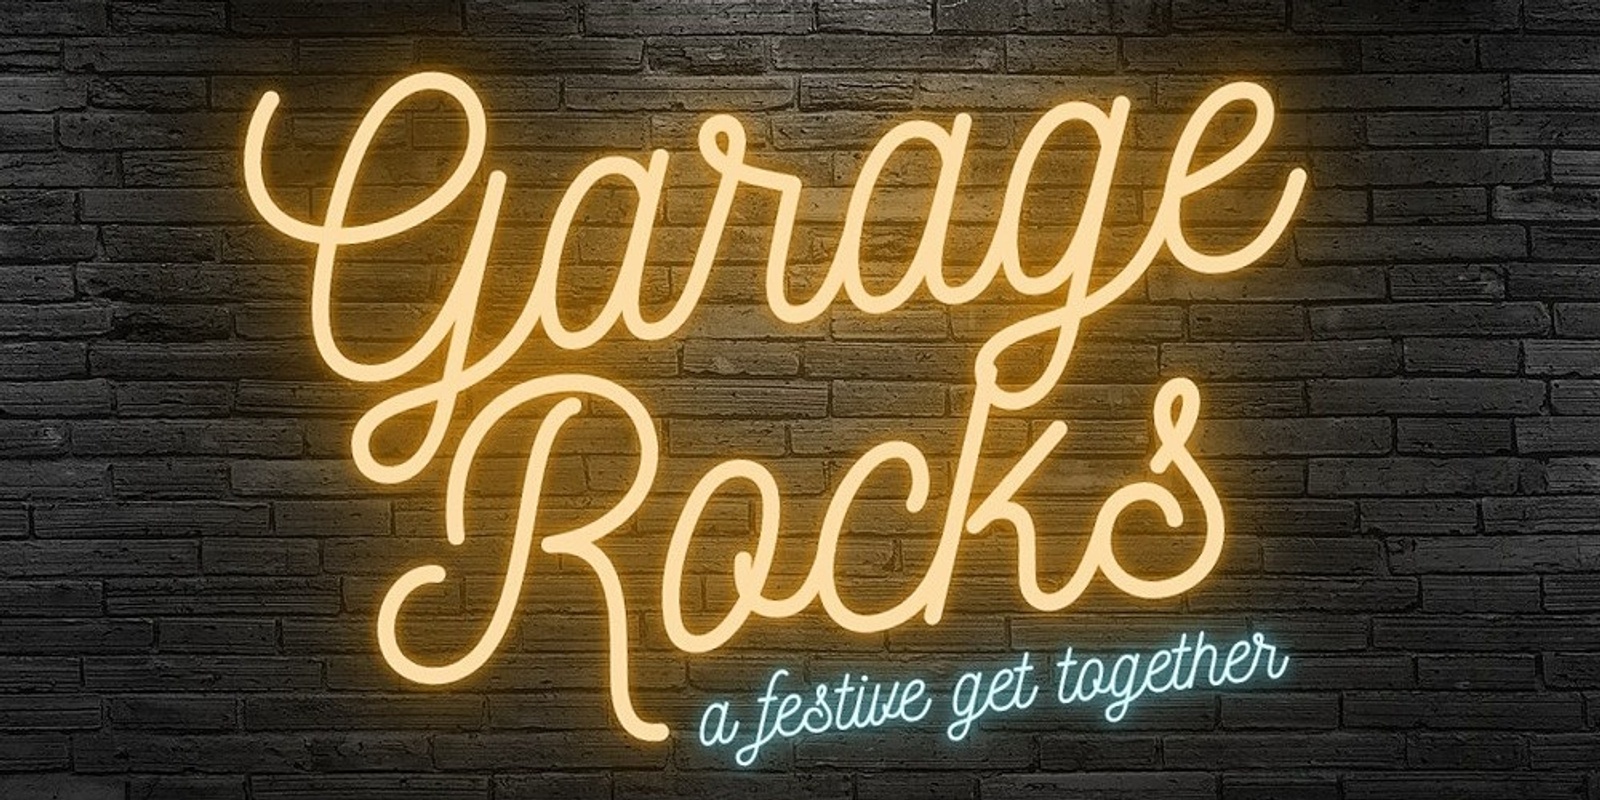 Banner image for Garage Rocks...a festive get together